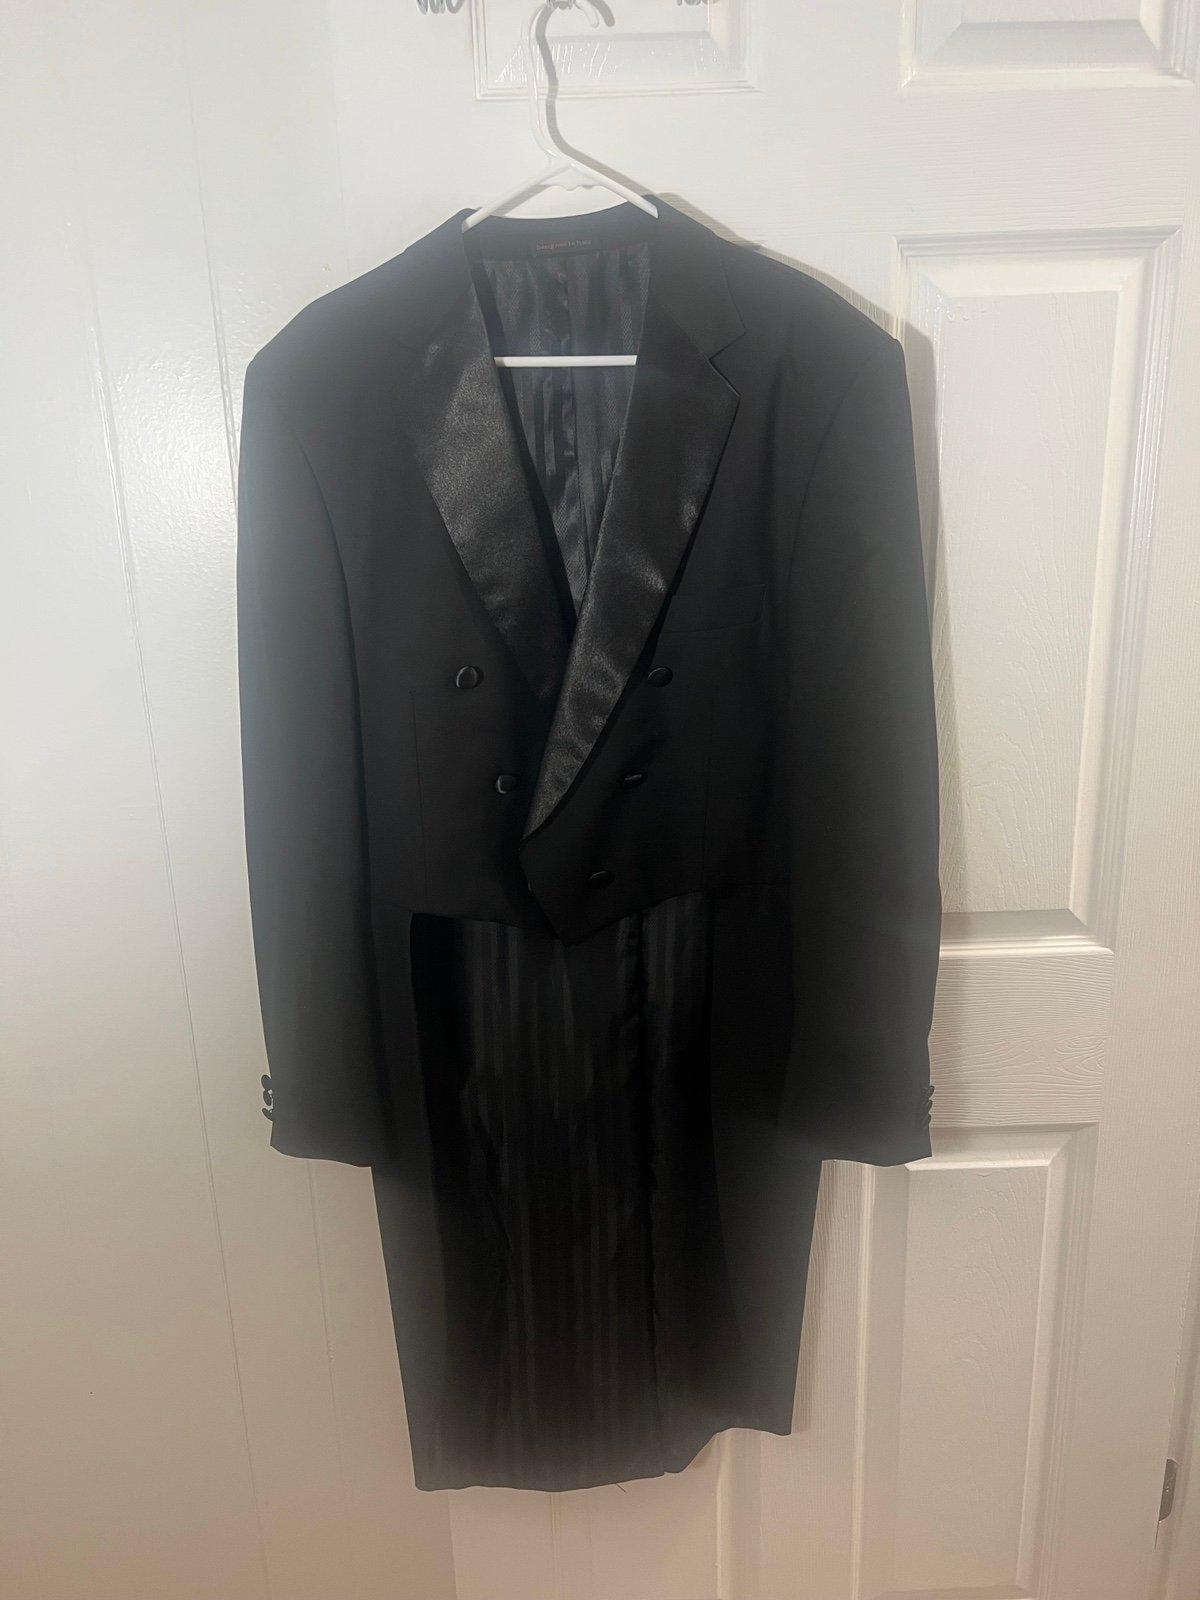 Vinci Black Tailcoat, Size 42L hfGCLJspj